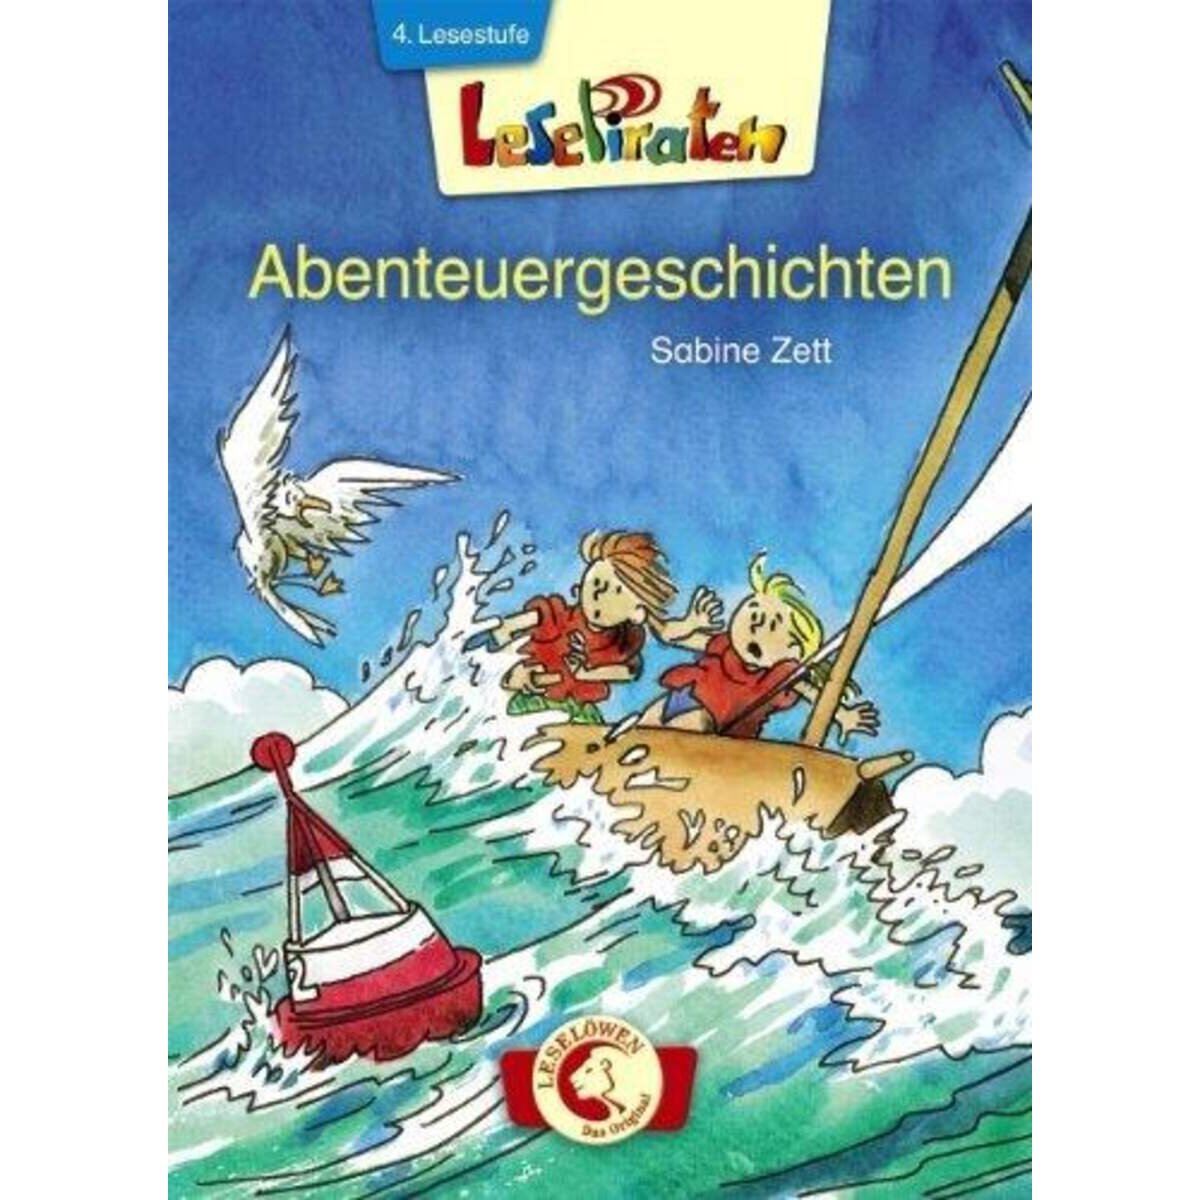 Loewe Lesepiraten Abenteuergeschichten